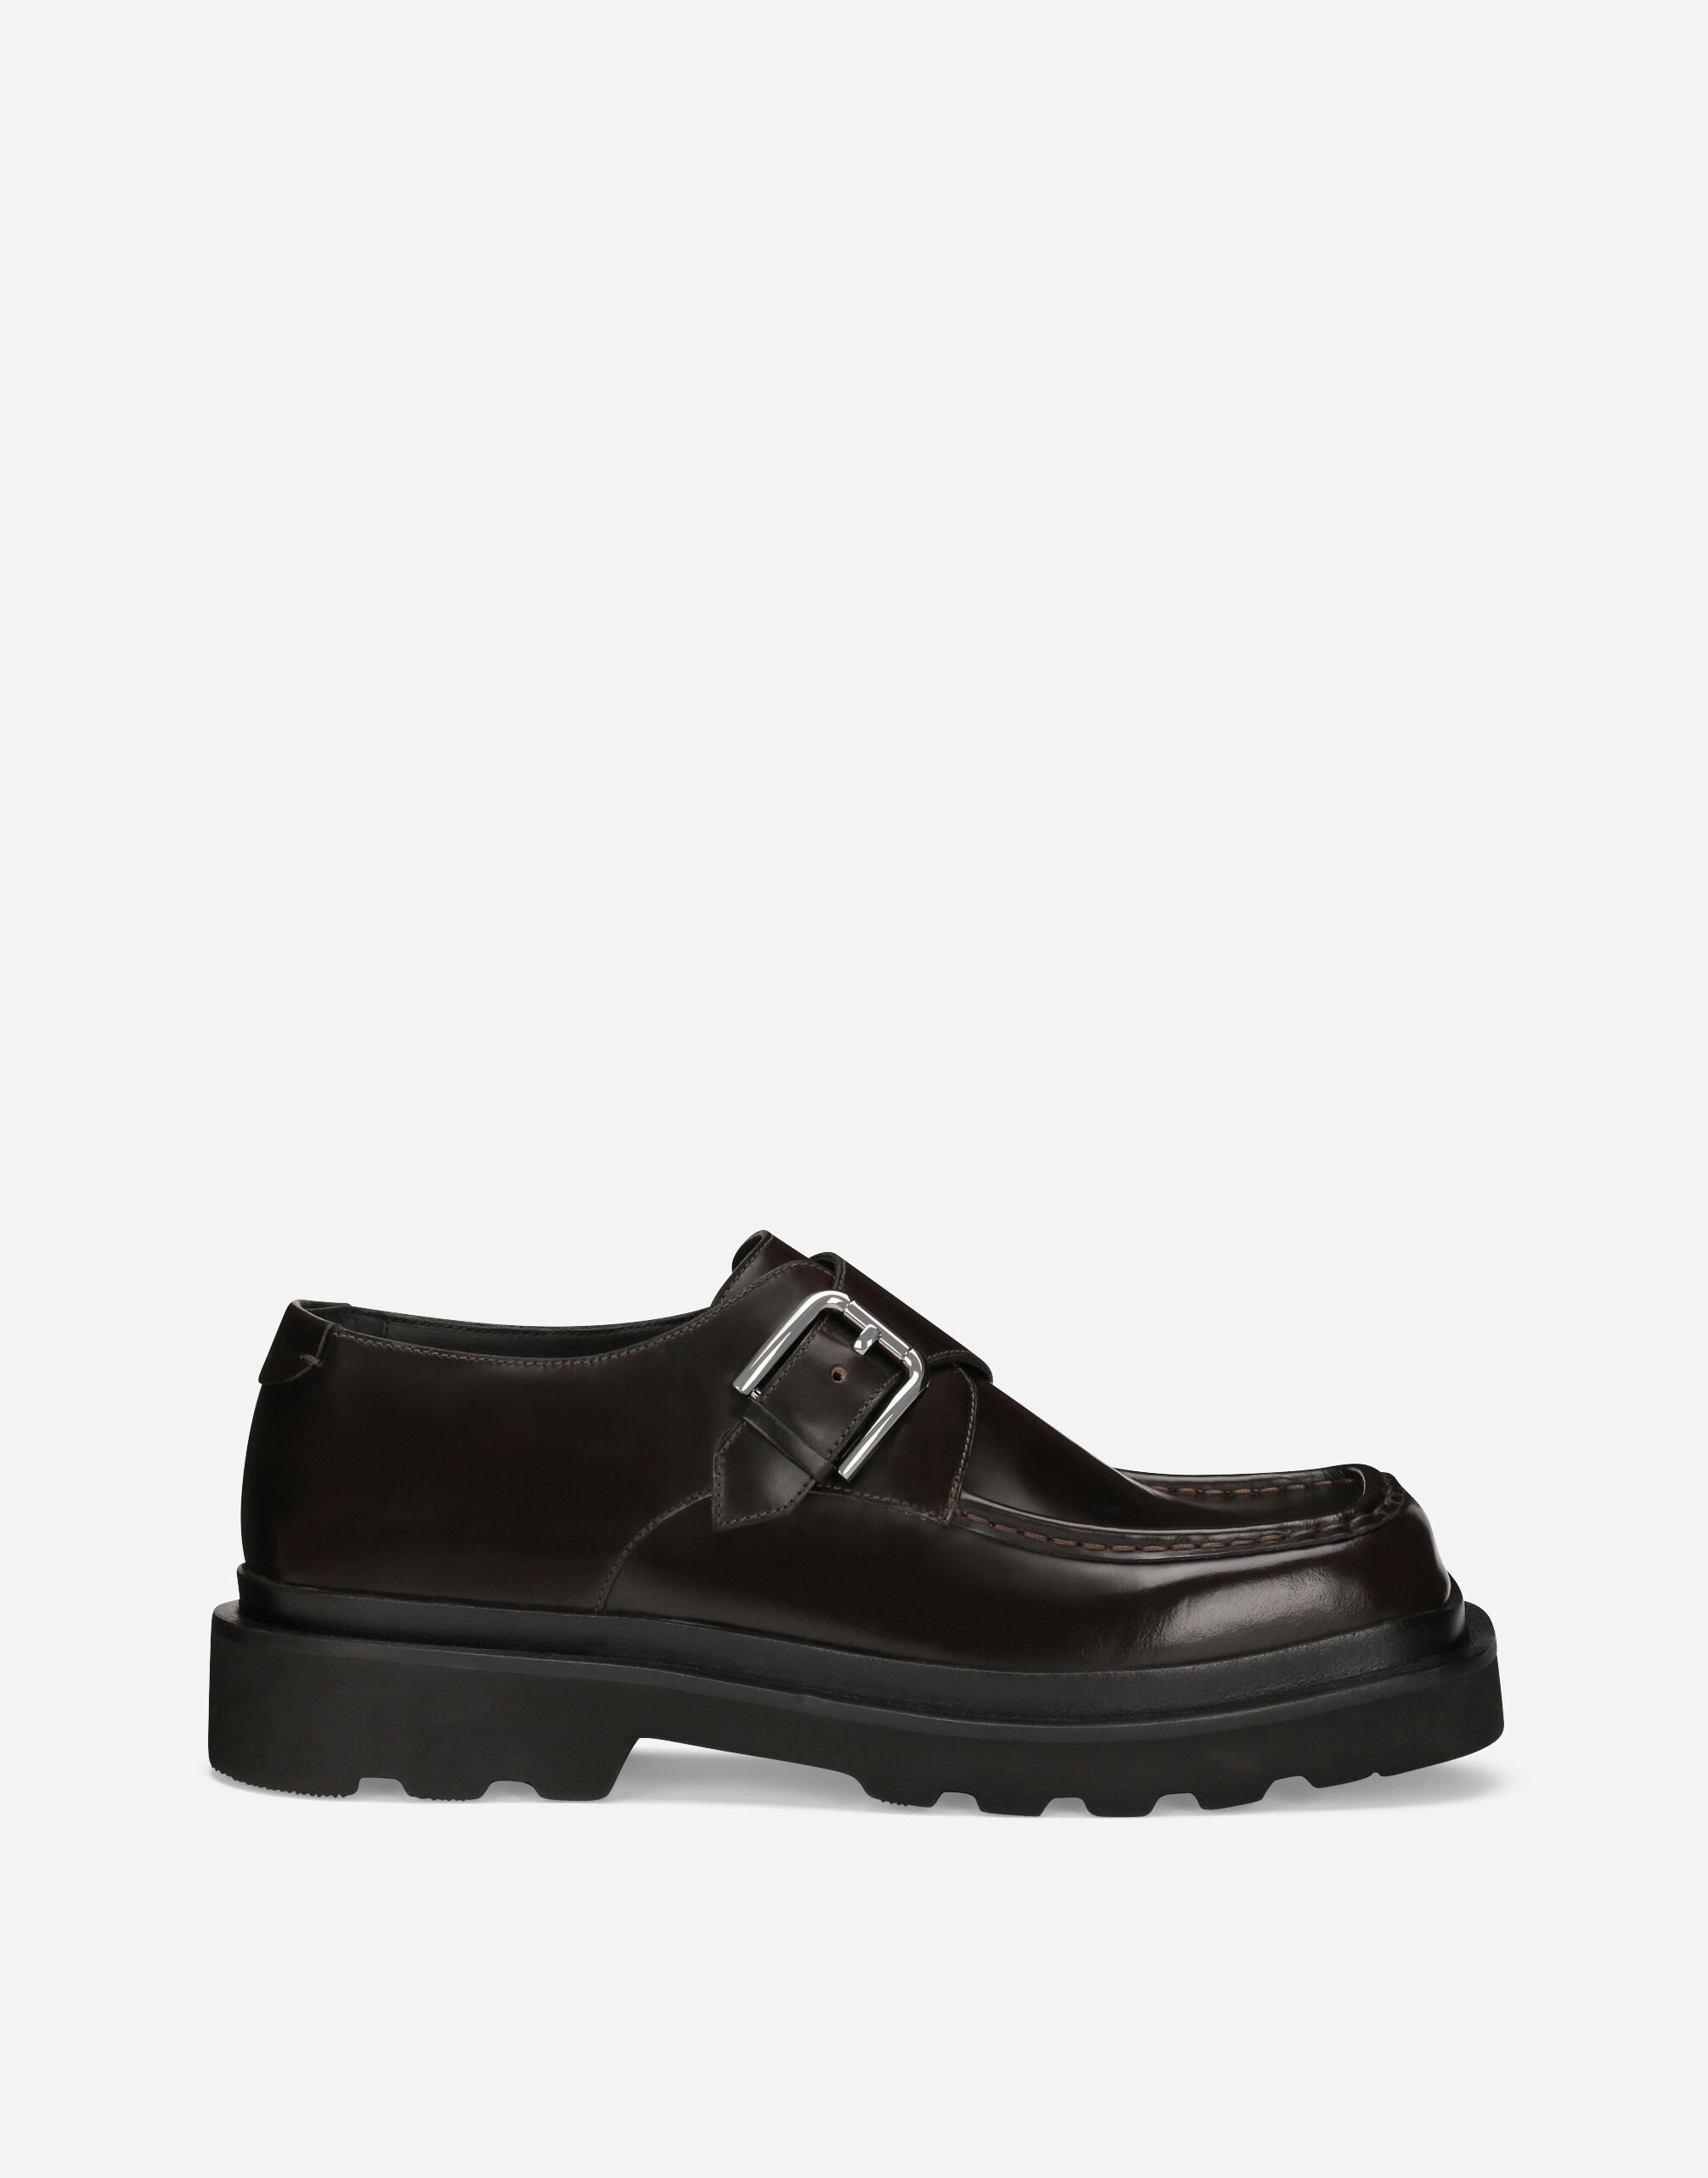 Dolce & Gabbana Zapatos monk en piel de becerro cepillada Negro A10782AB640